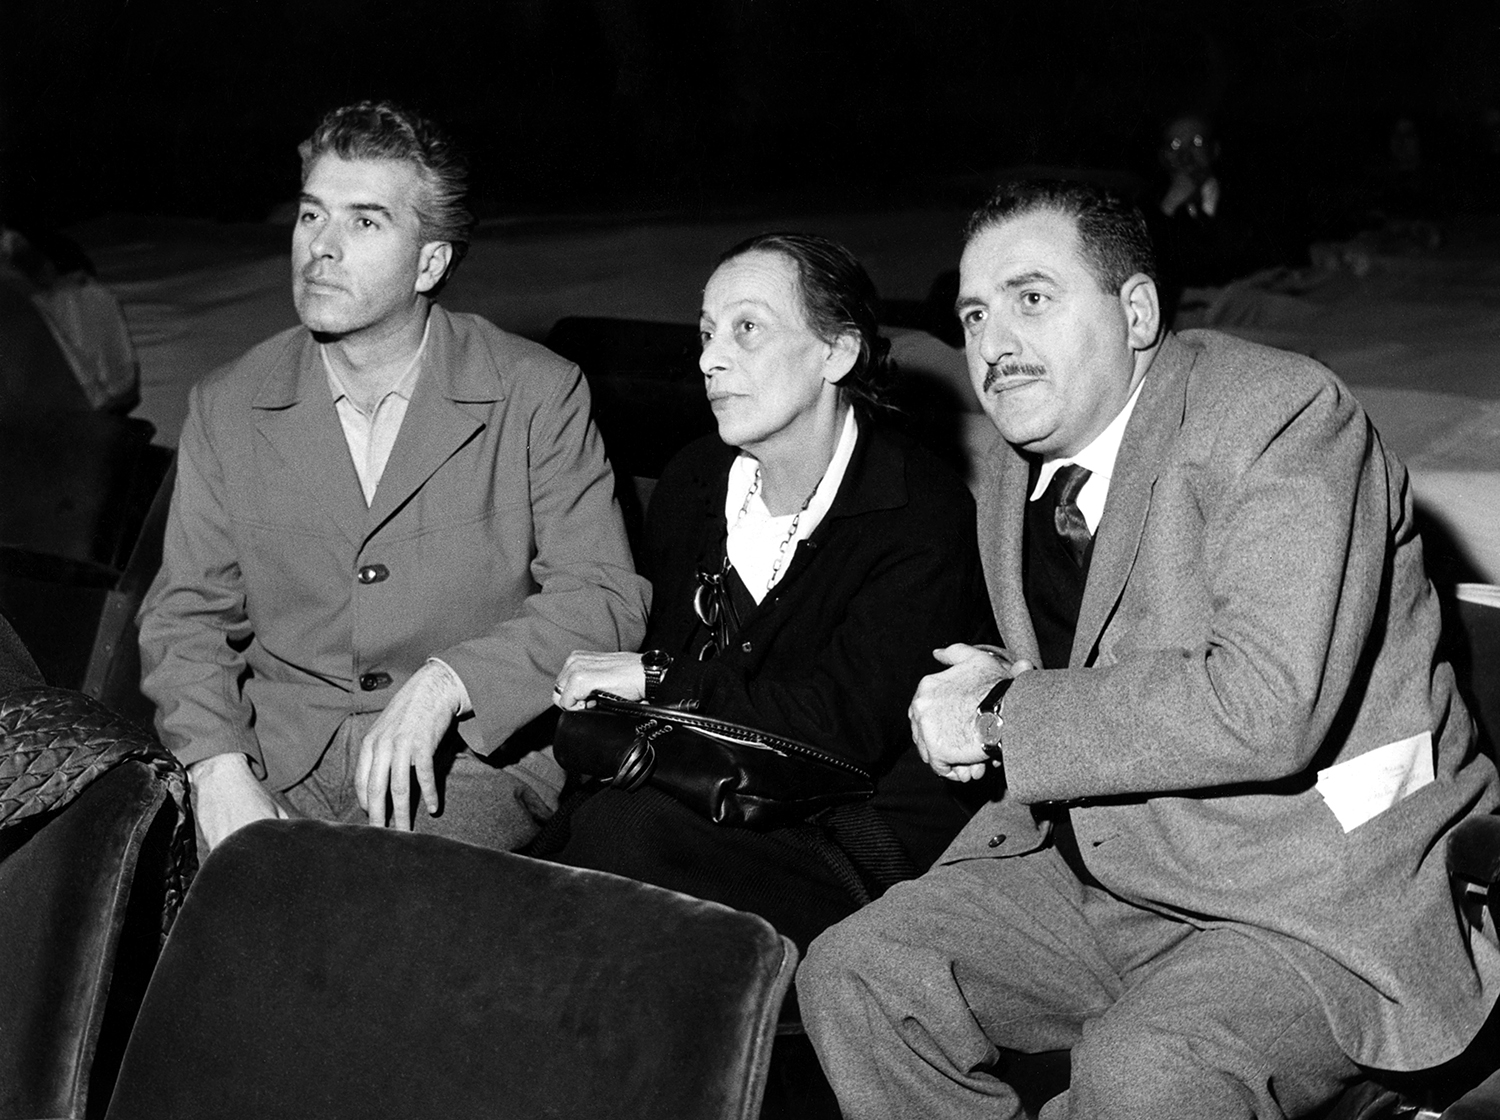 Seguendo le prove, tra Strehler e Grassi, Helene Weigel, la vedova di Brecht - Archivio Piccolo Teatro di Milano